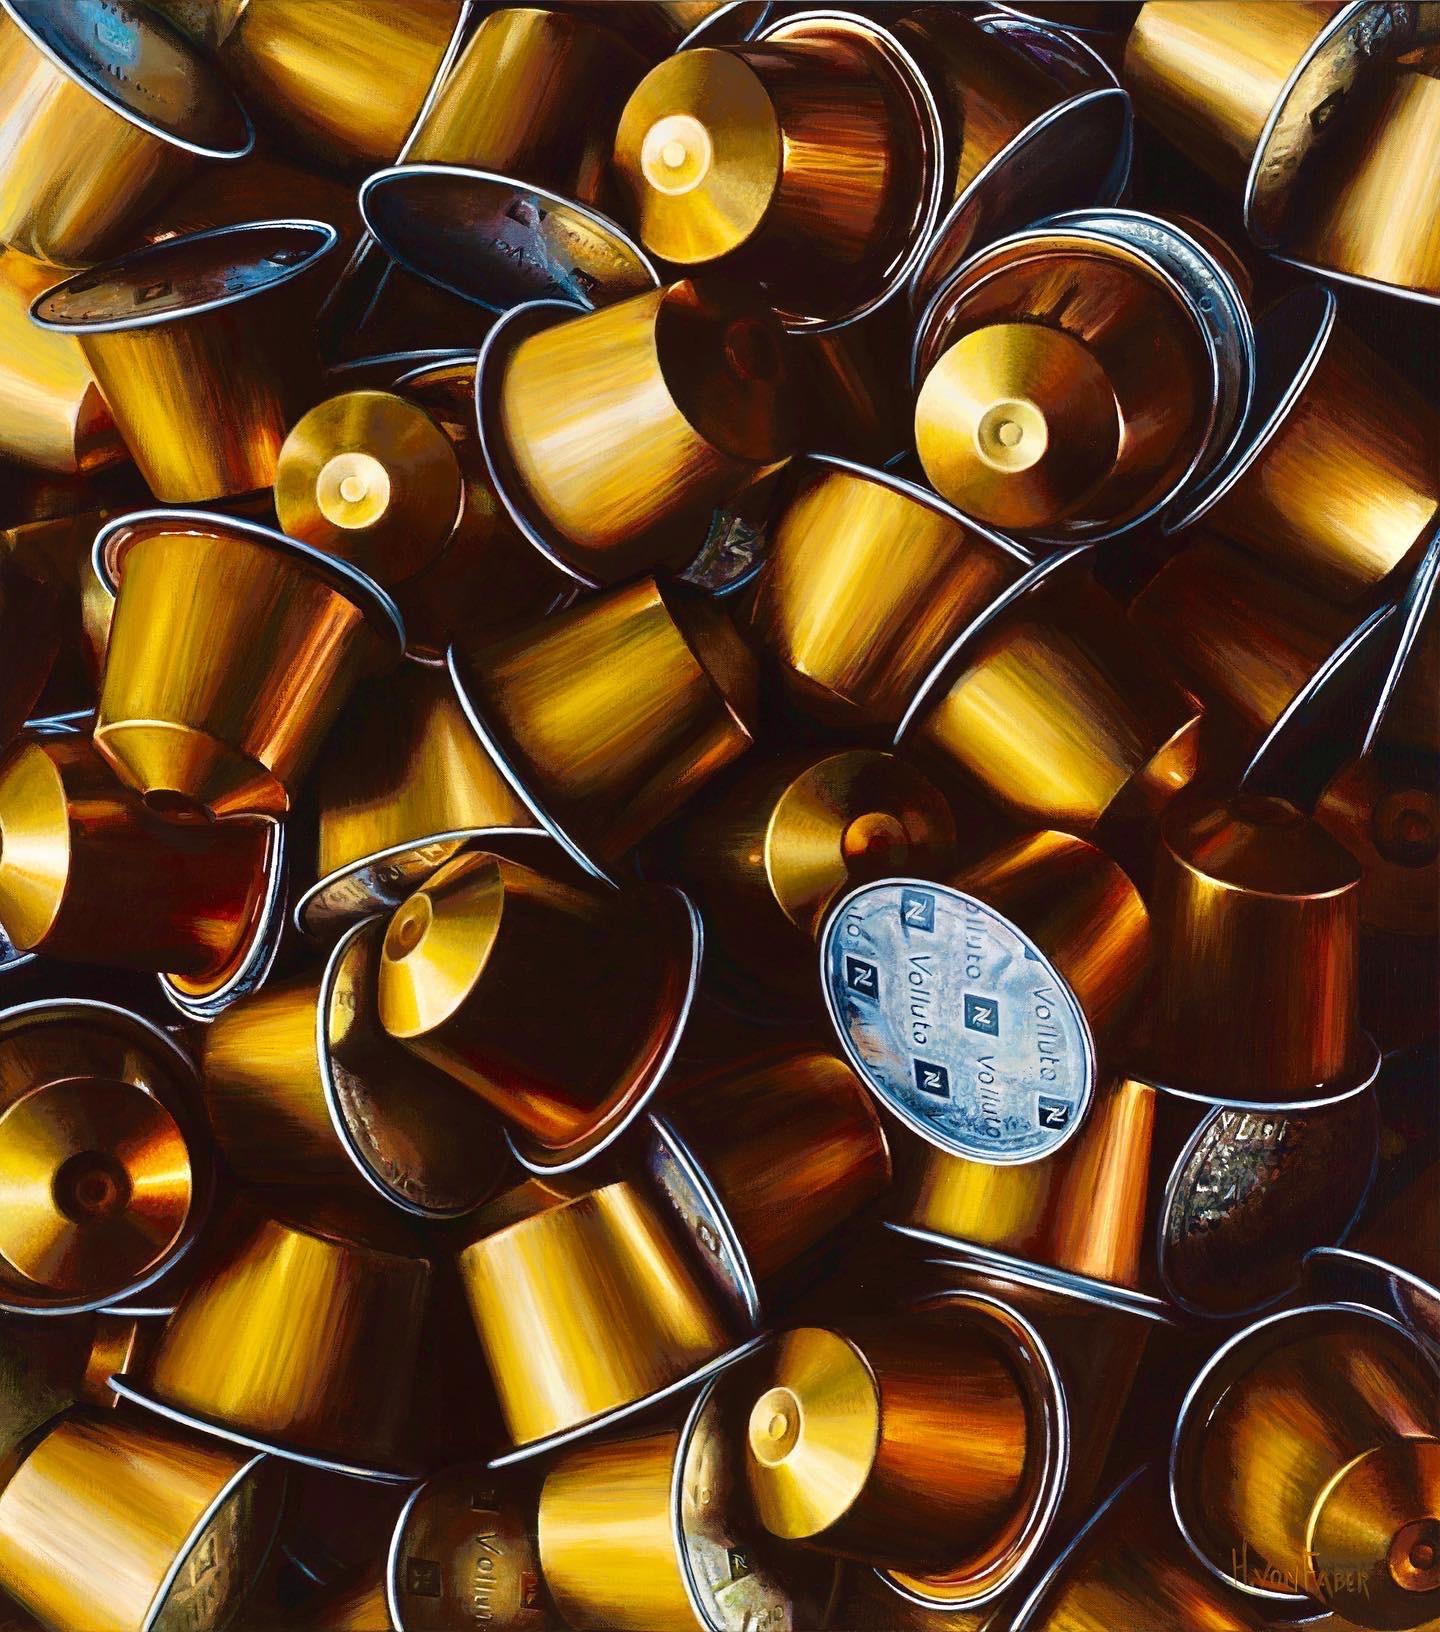 Tasses à café dorées - 21e peinture de nature morte hyperréaliste contemporaine - Contemporain Painting par Heidi von Faber